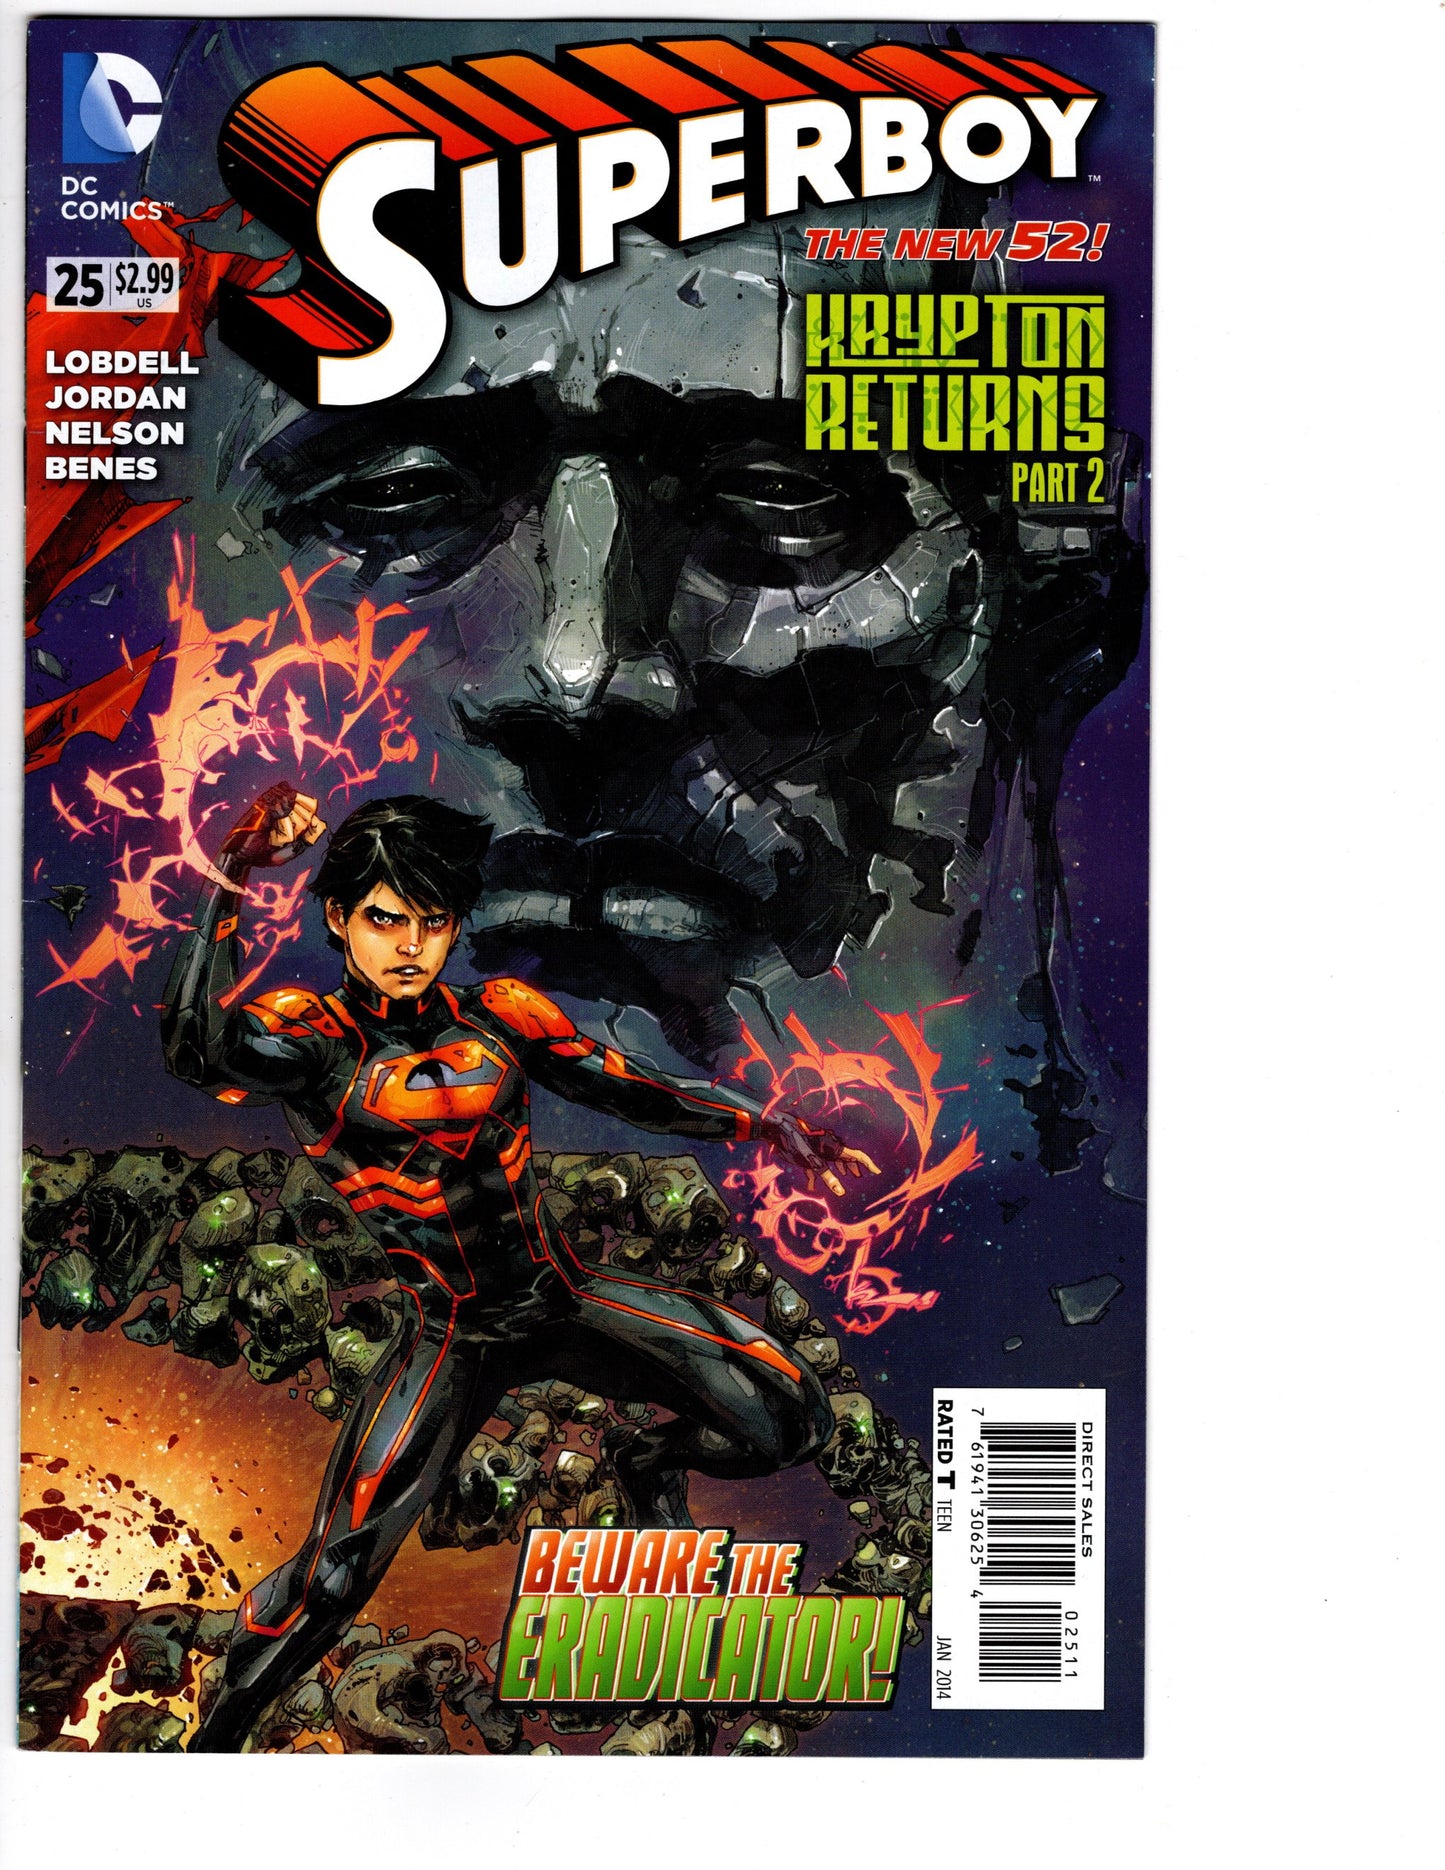 Superboy #25